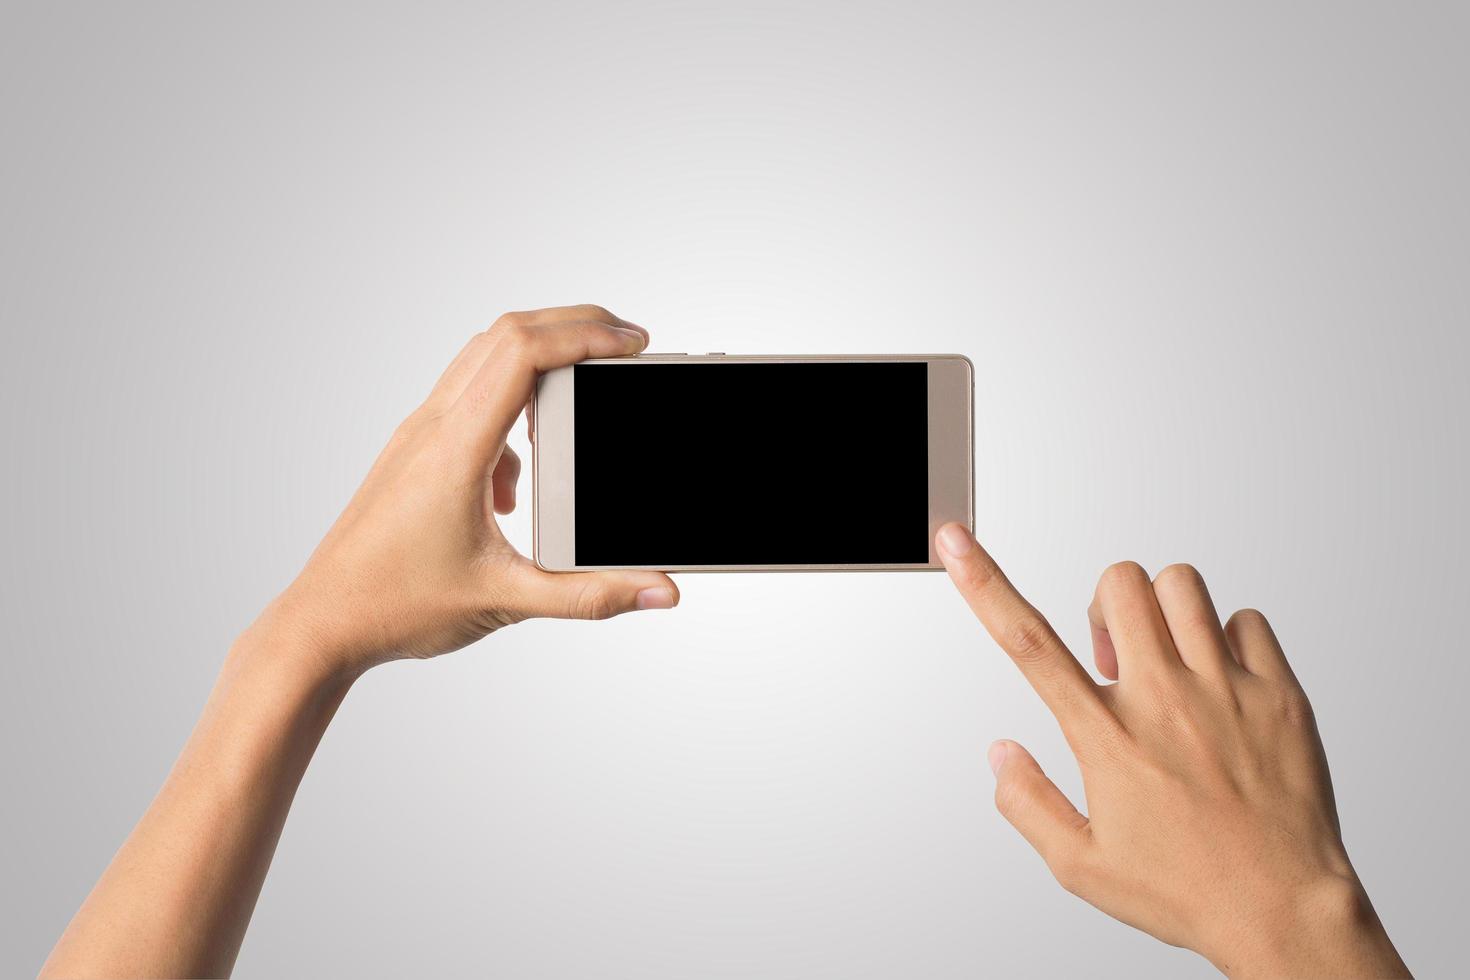 Frau Hand hält Smartphone leeren Bildschirm foto